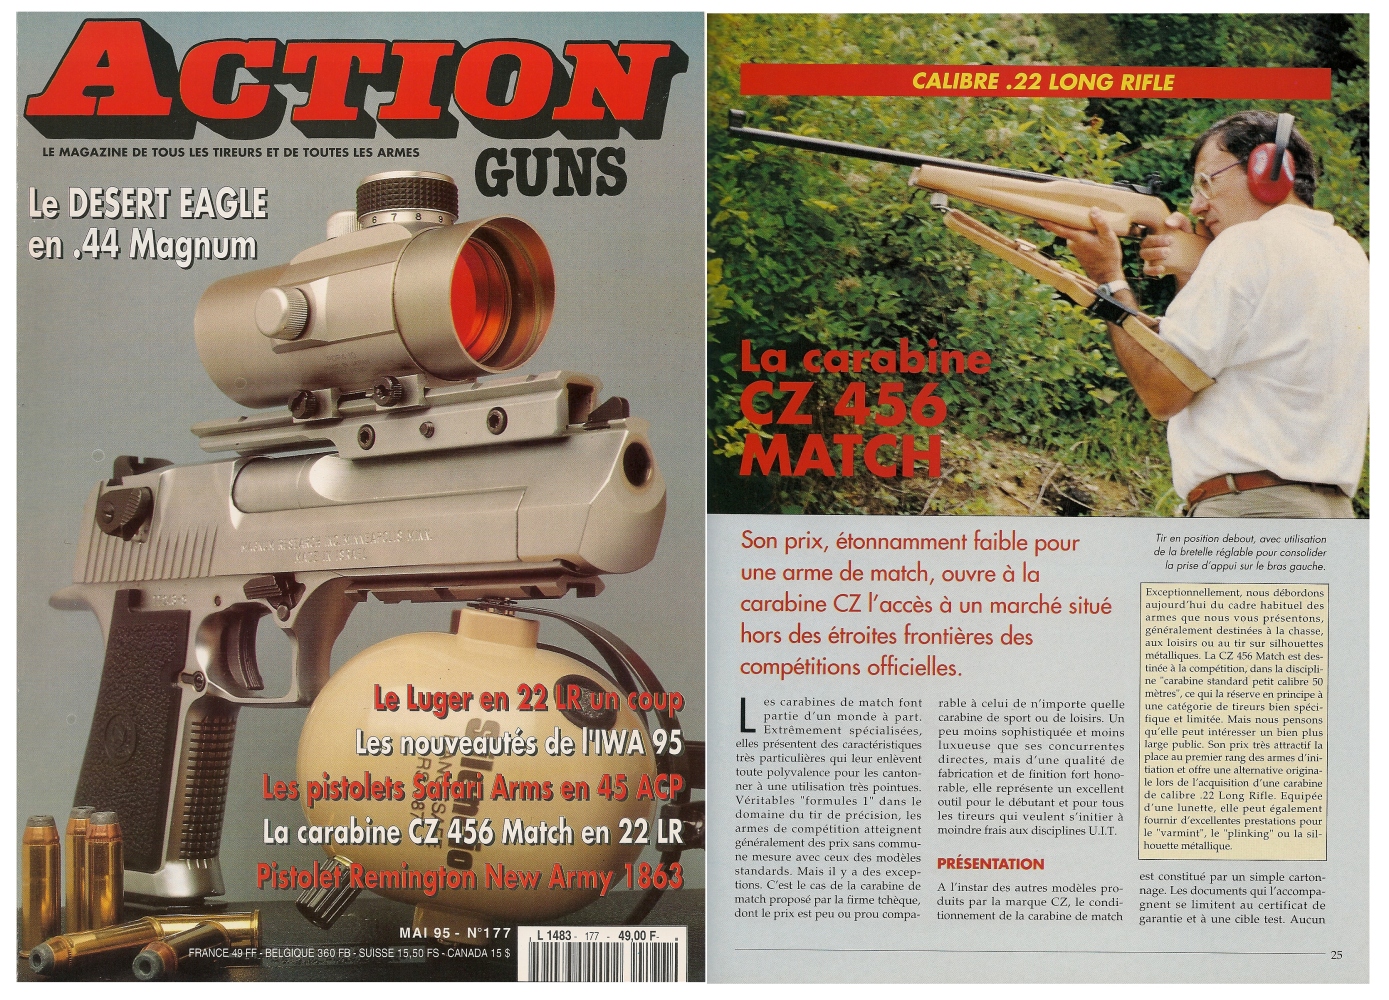 Le banc d’essai de la carabine CZ 456 Match a été publié sur 5 pages dans le magazine Action Guns n°177 (mai 1995). 